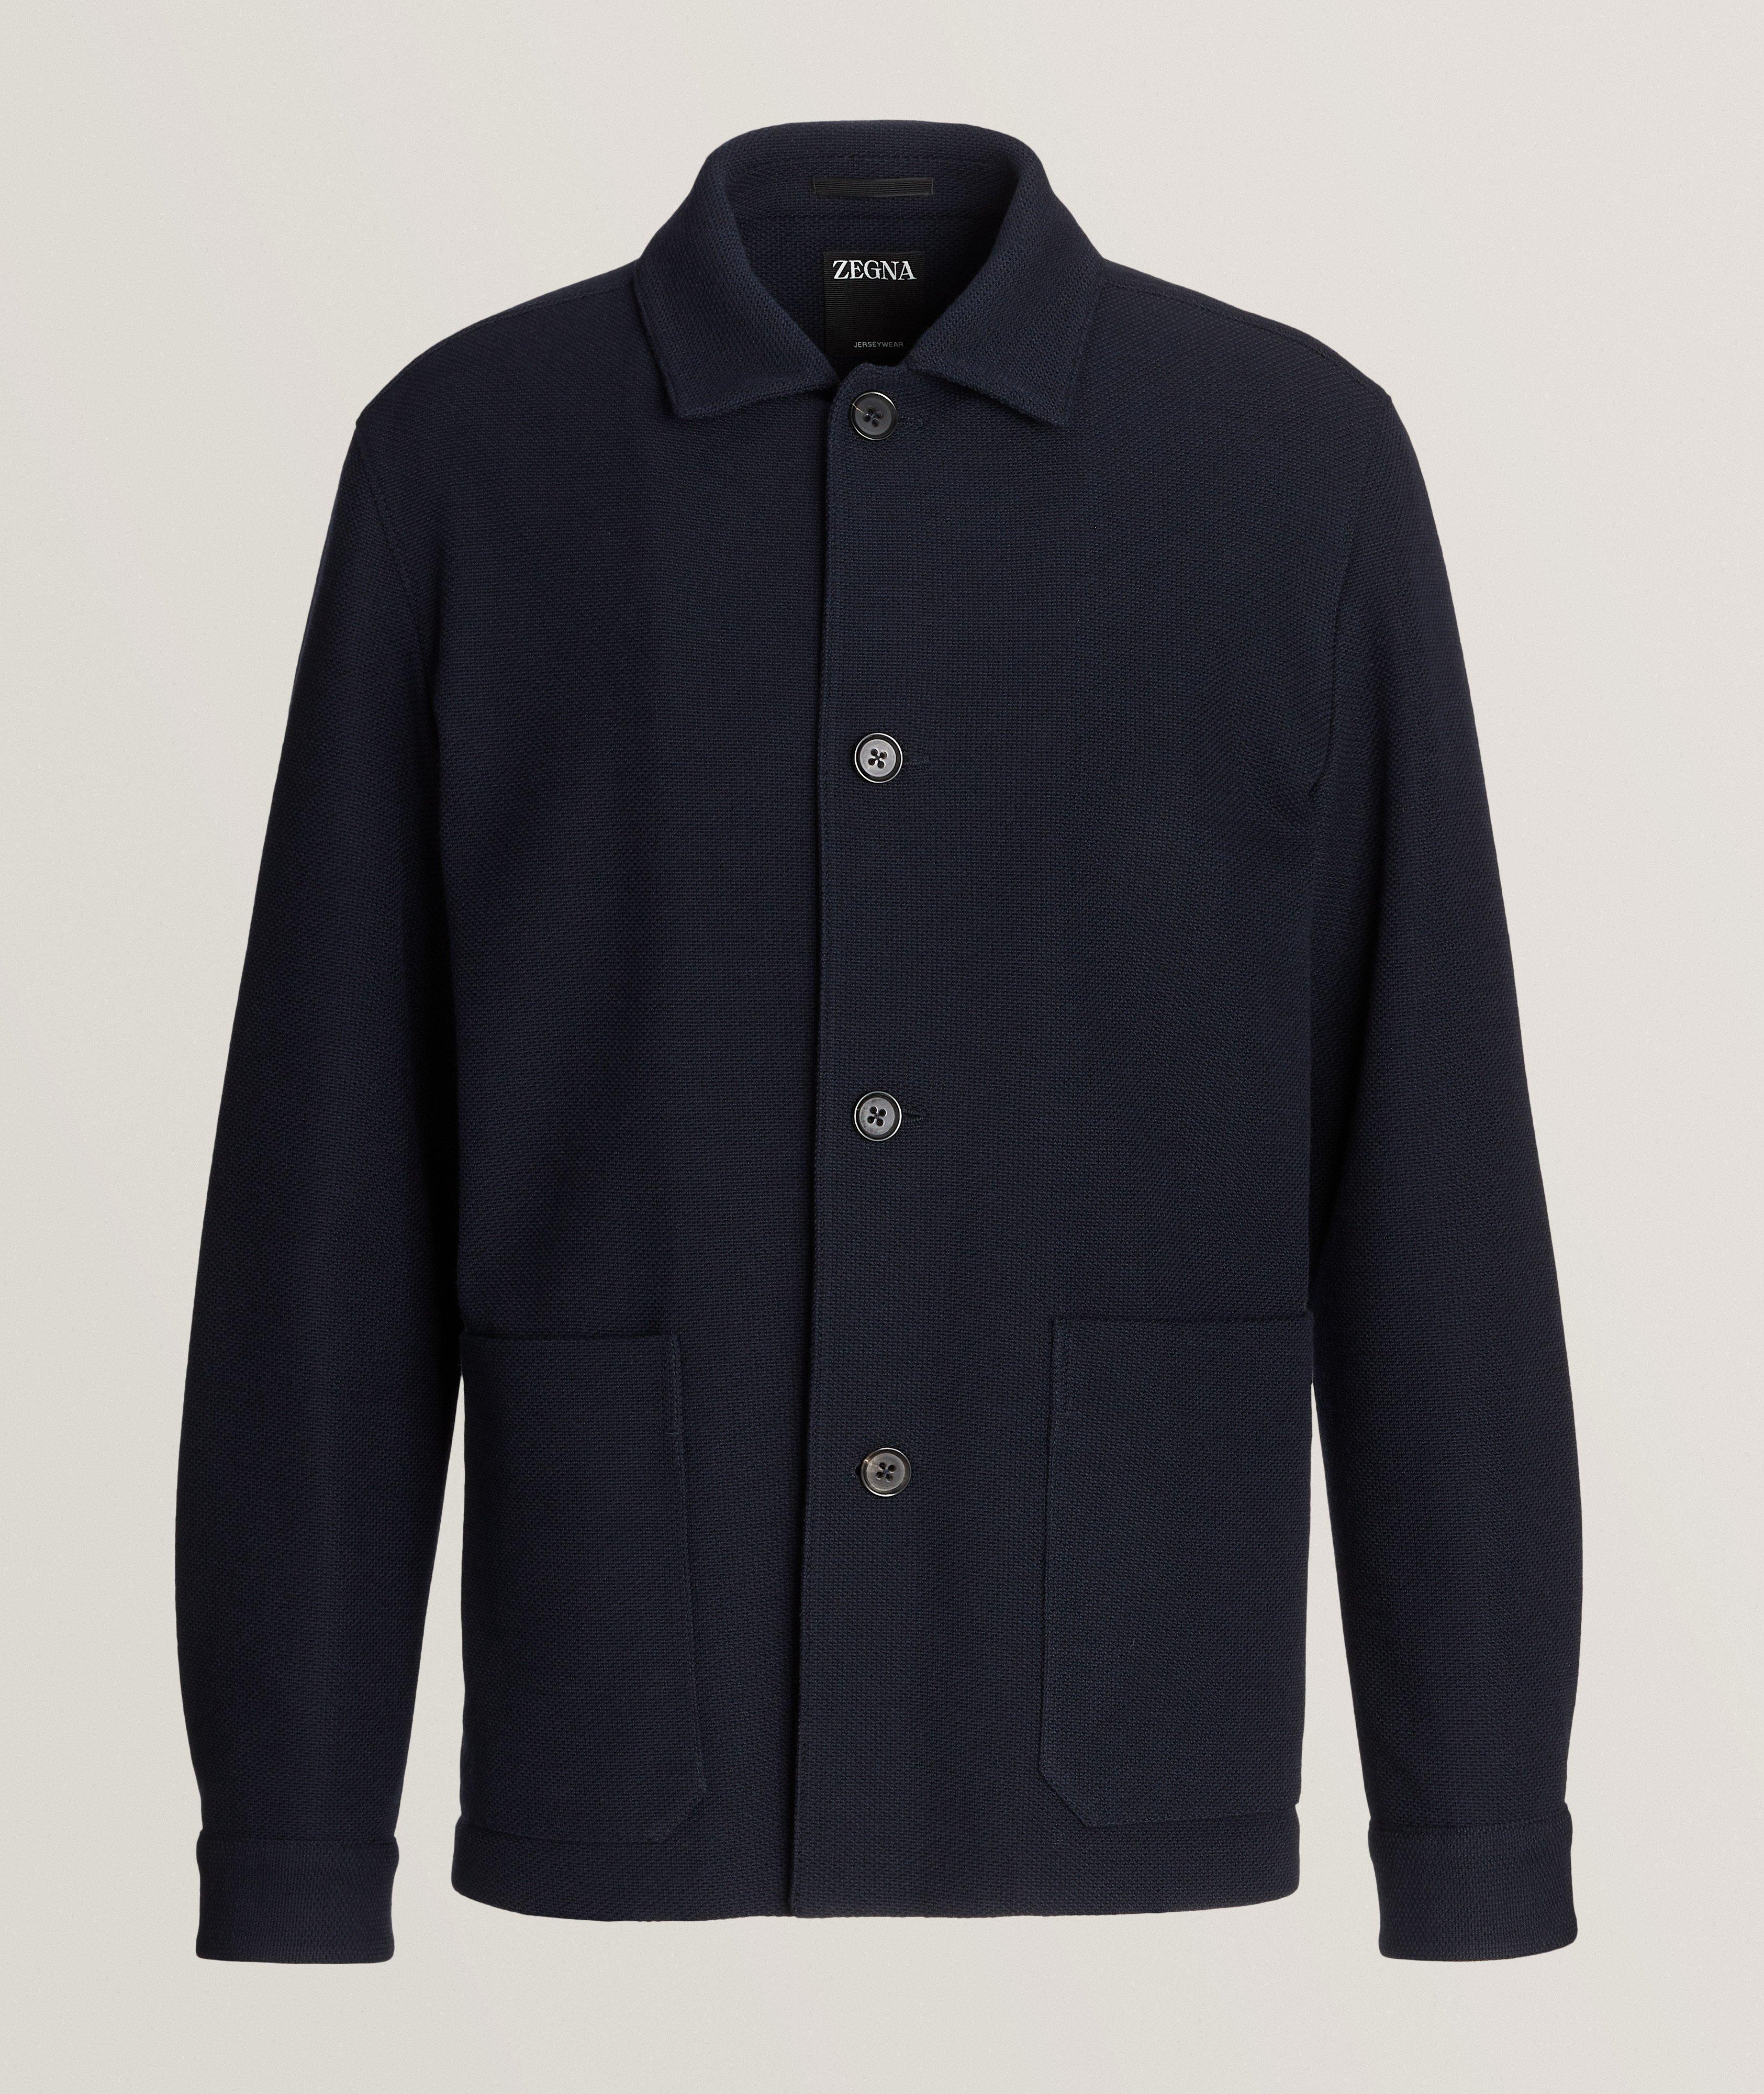 Zegna Jersey Wool-Cotton Chore Jacket